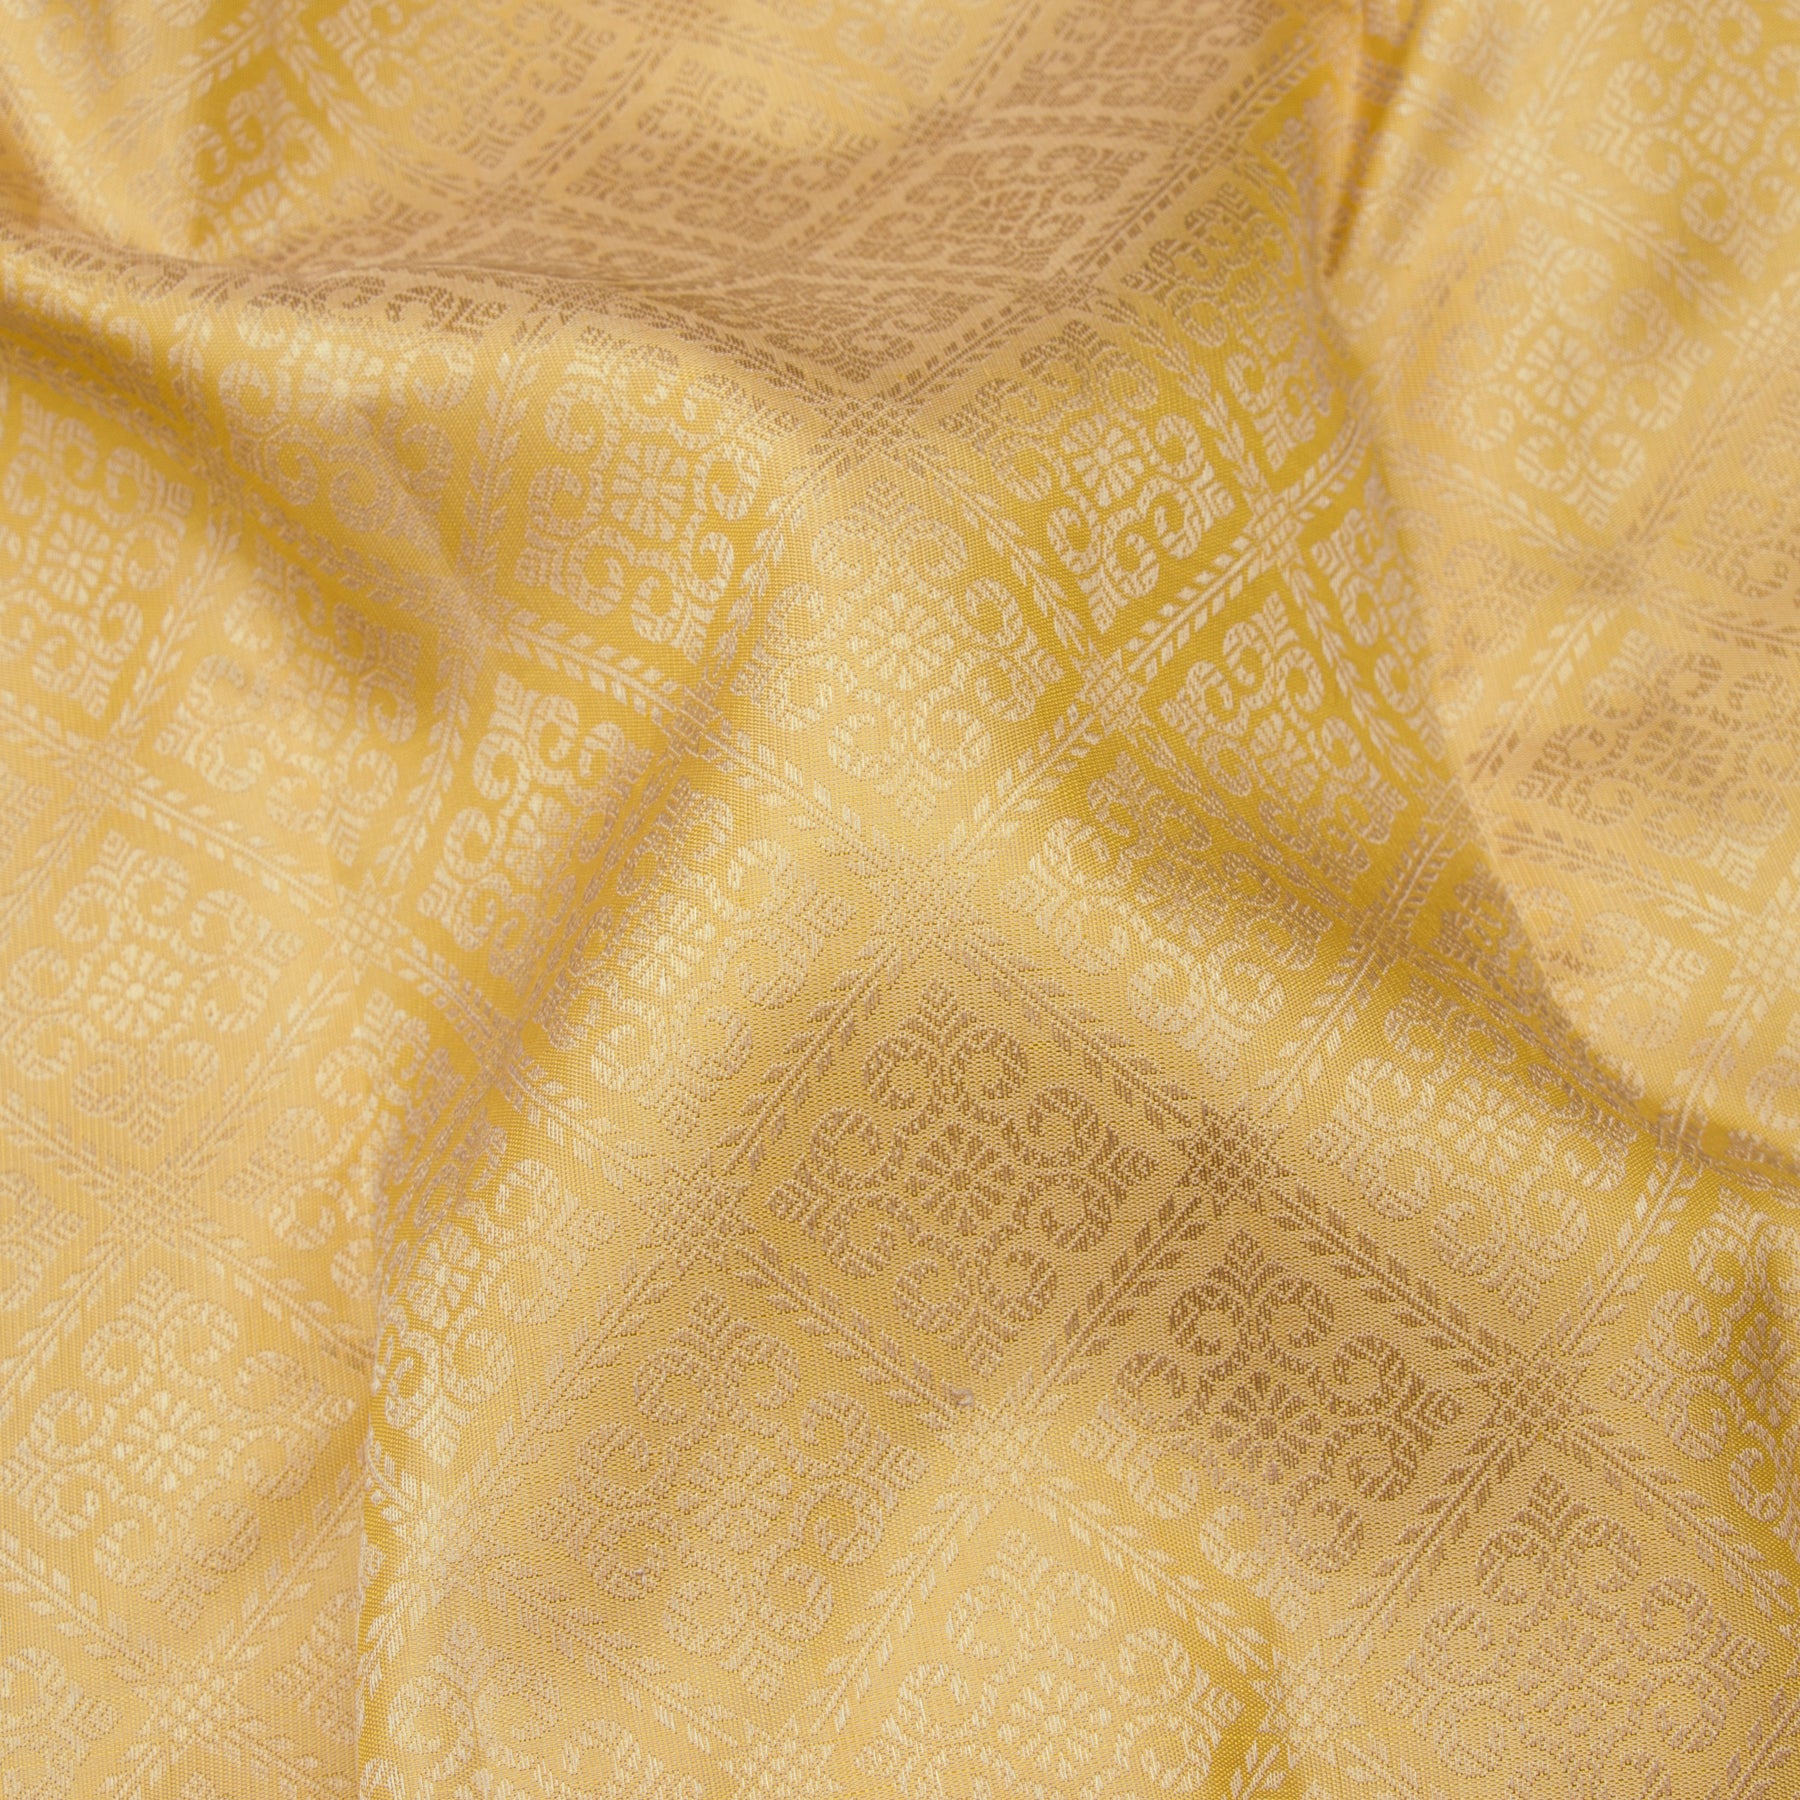 Kanakavalli Kanjivaram Silk Sari 24-599-HS001-00248 - Fabric View